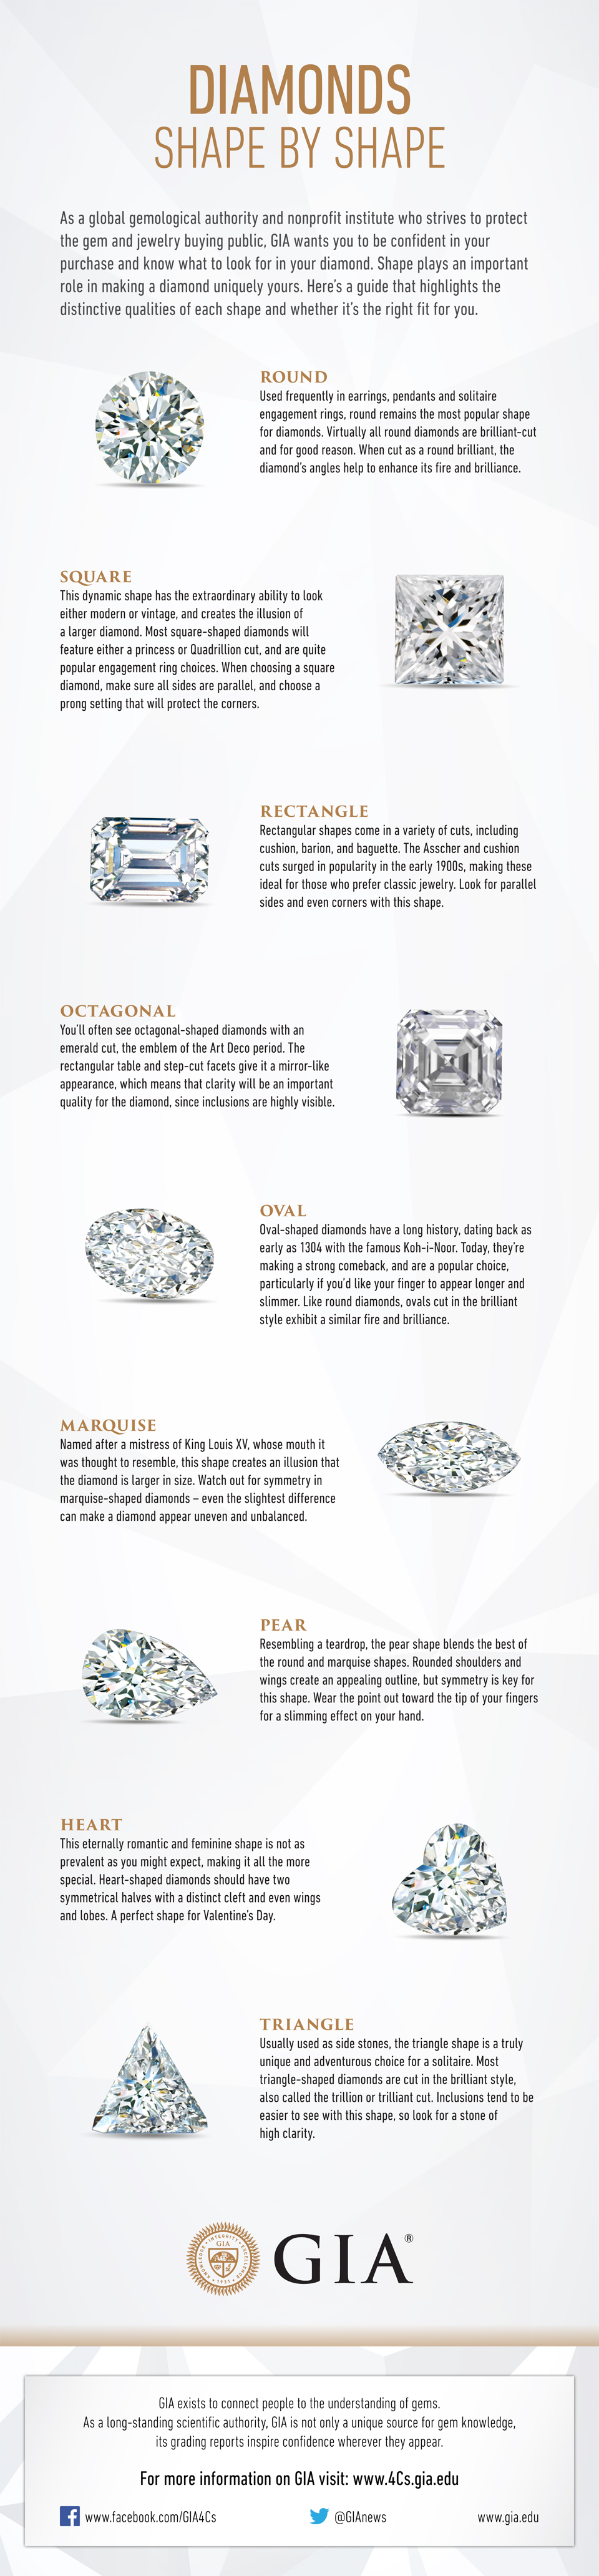 GIA Diamond Shapes 